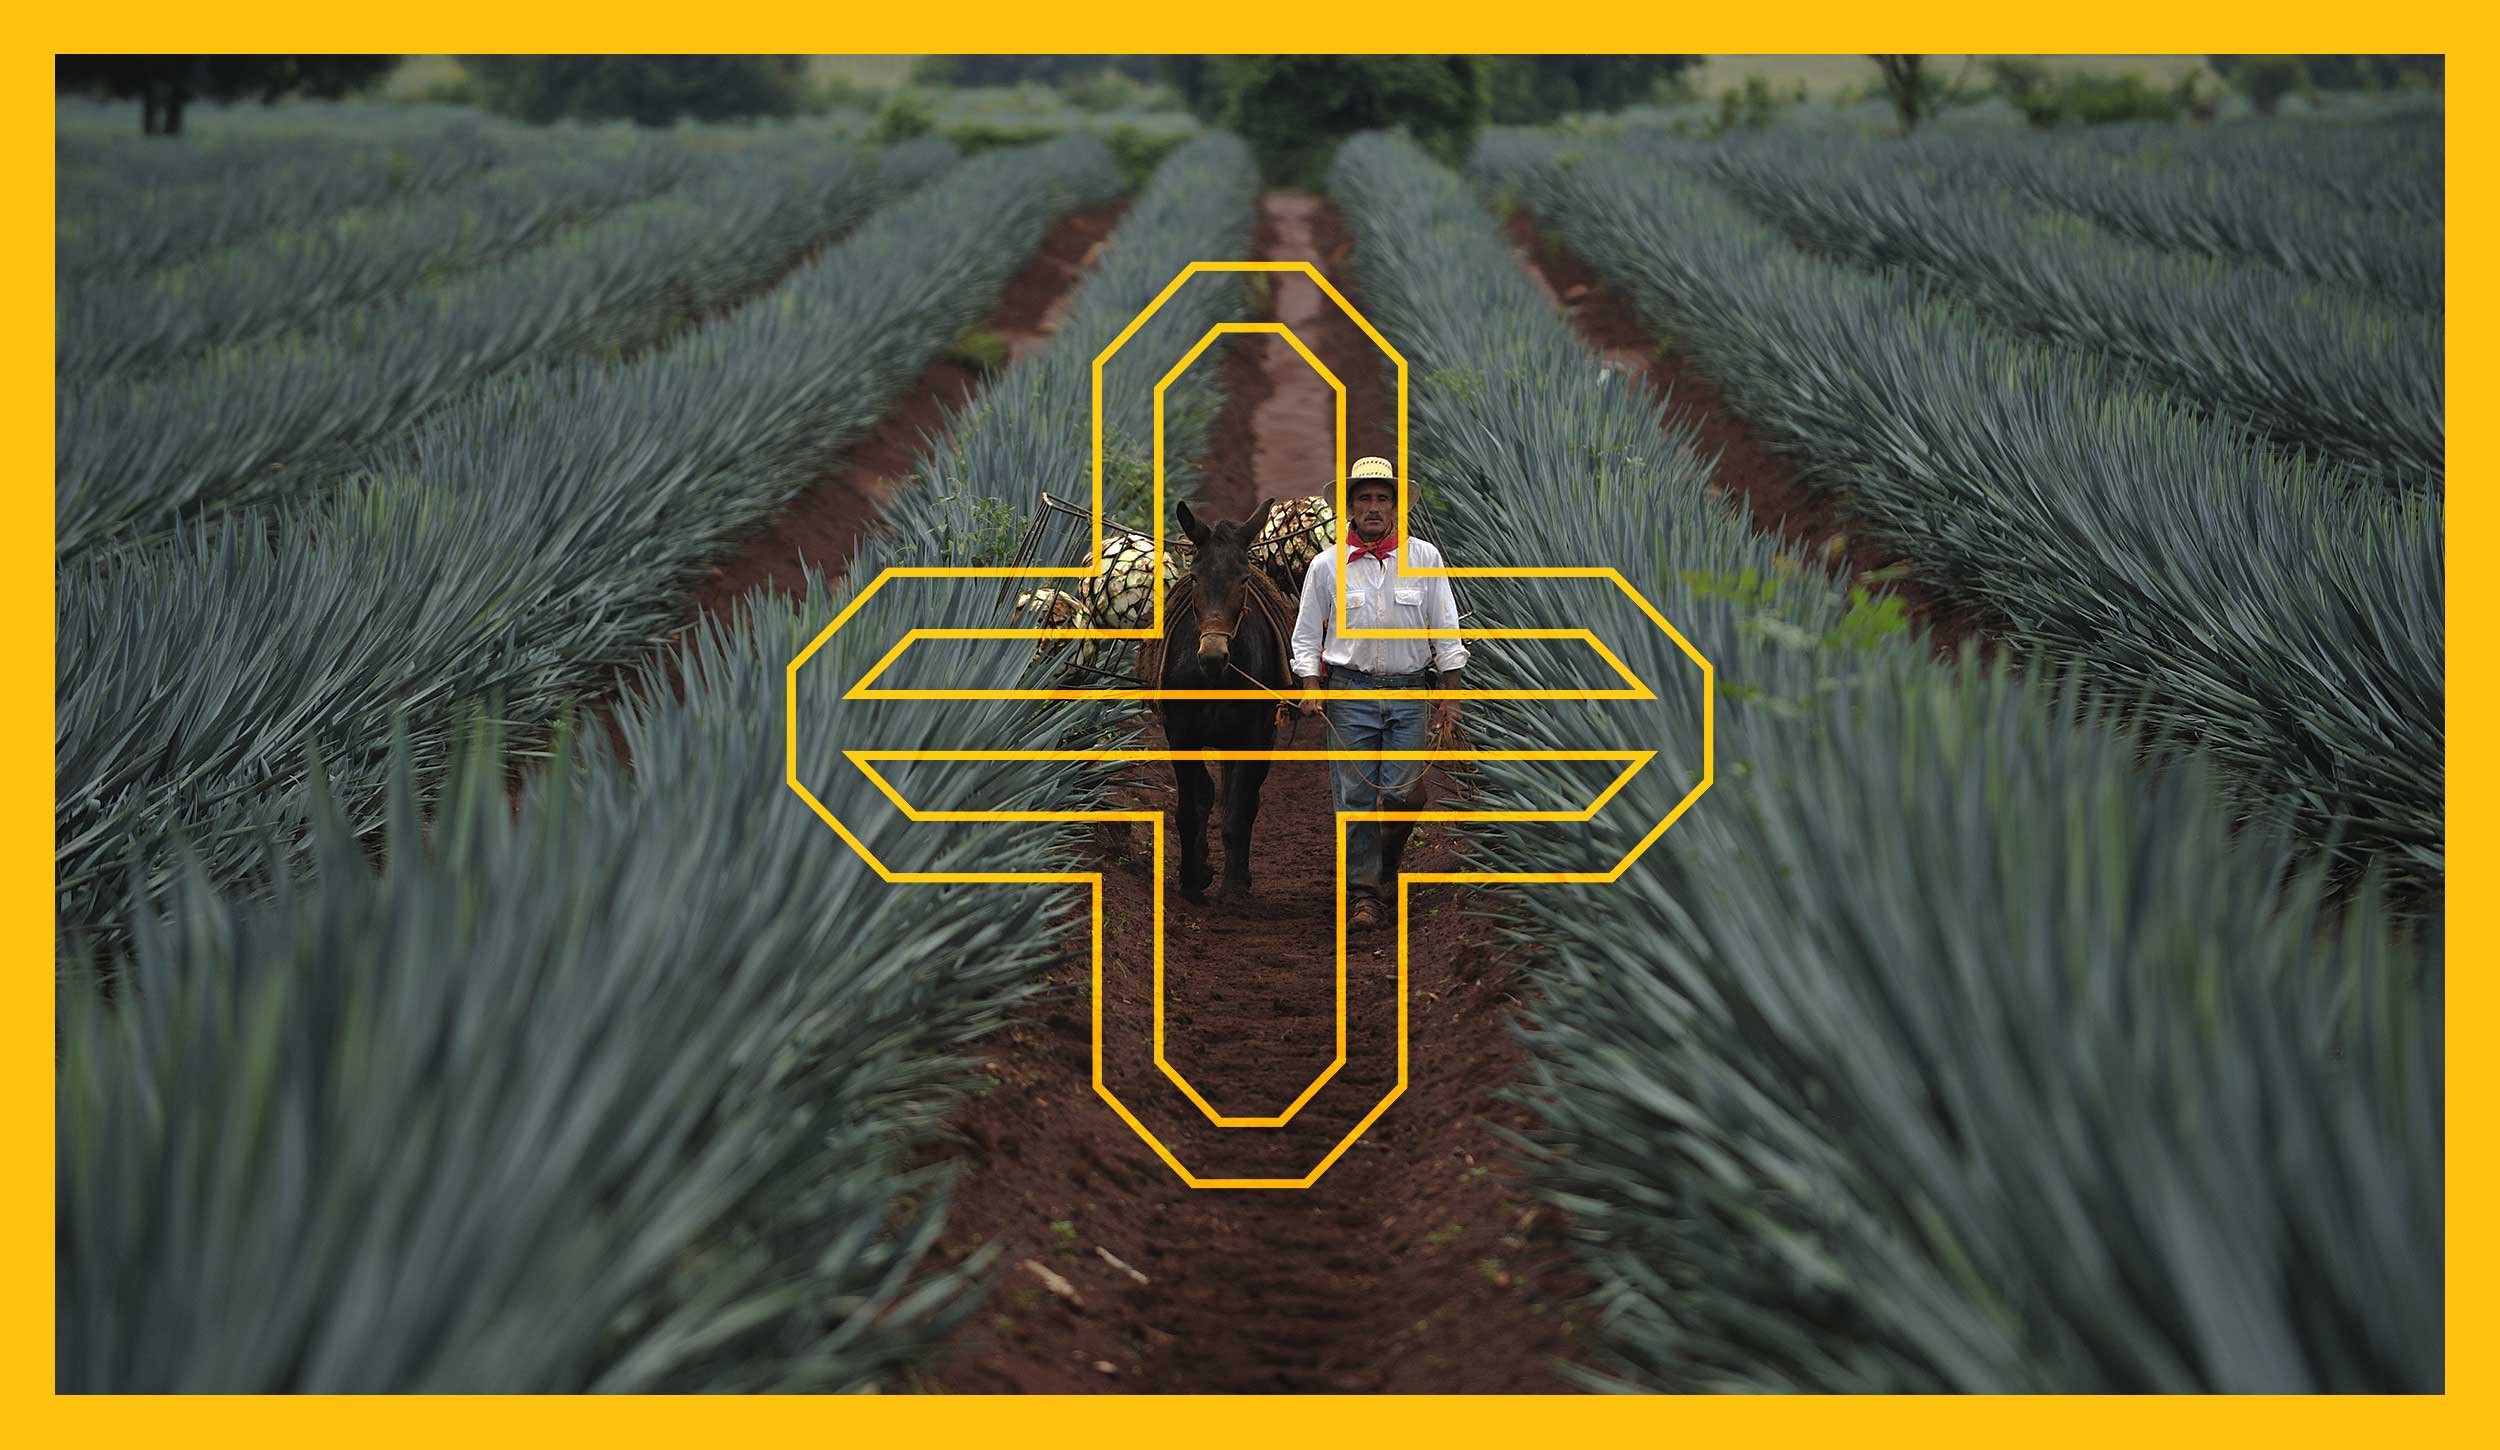 Telson-tequila-cross-logo-agave-field.jpg